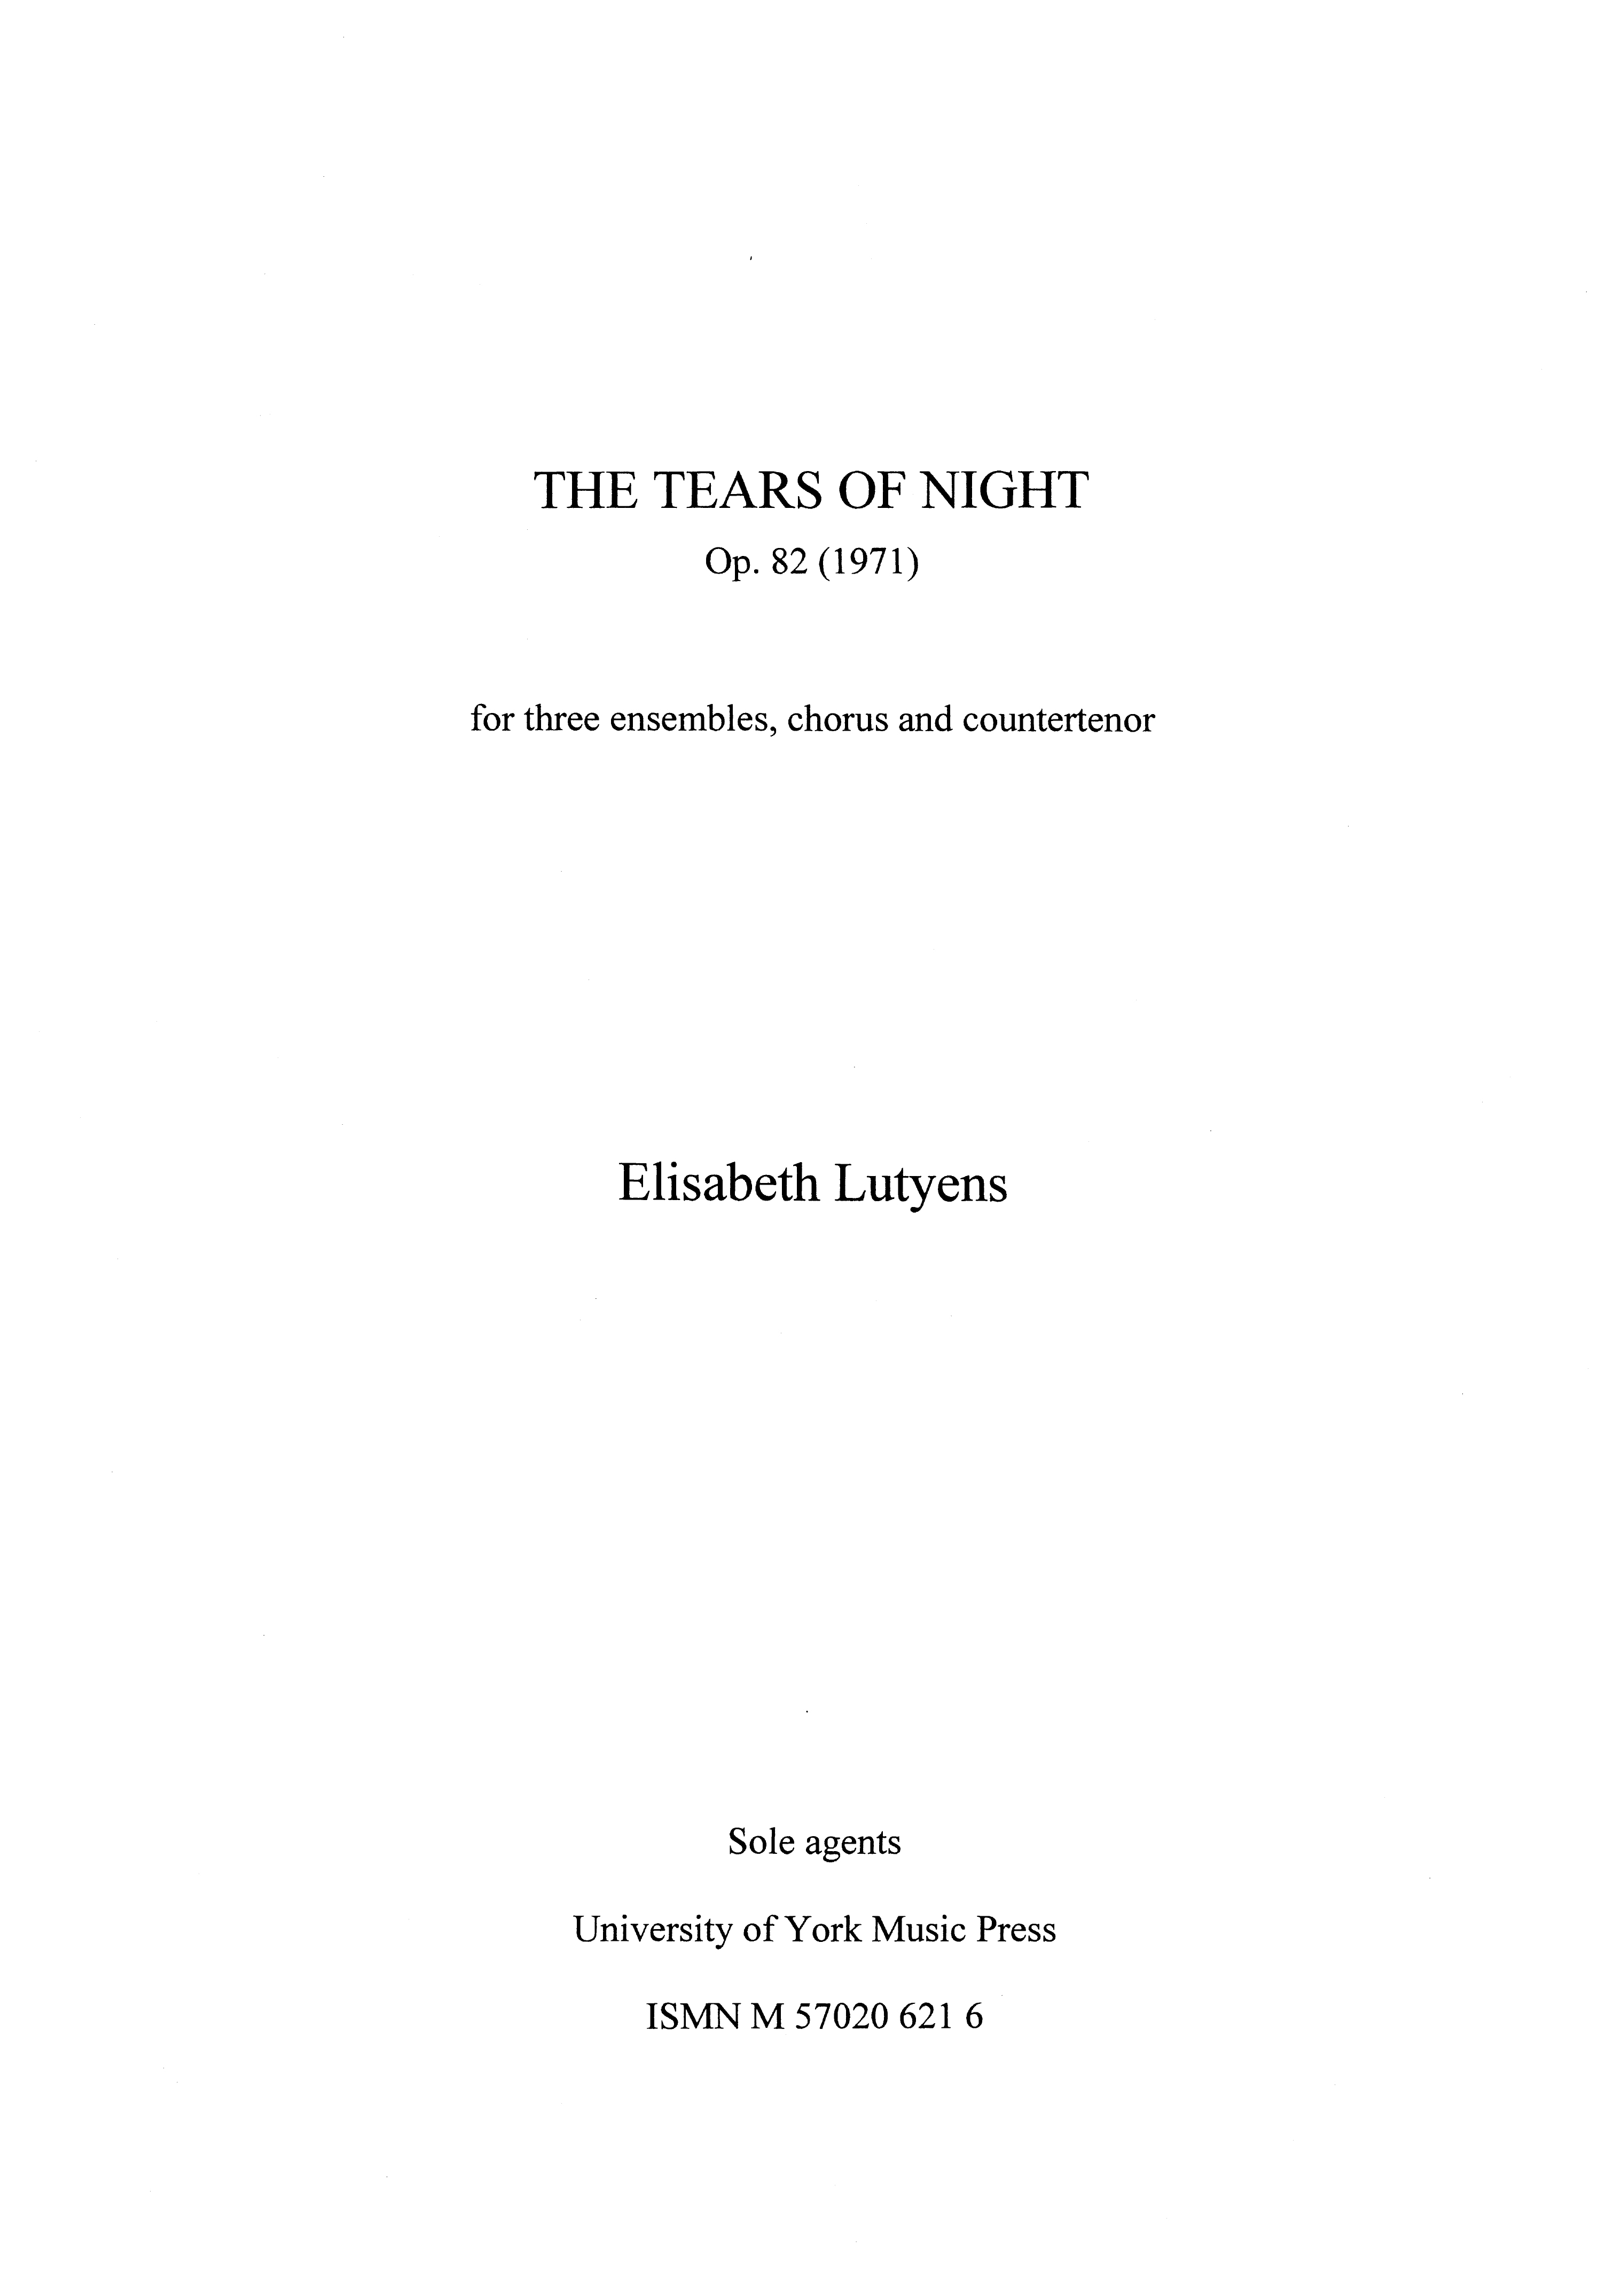 Elisabeth Lutyens: The Tears of Night Op.82: Ensemble: Score